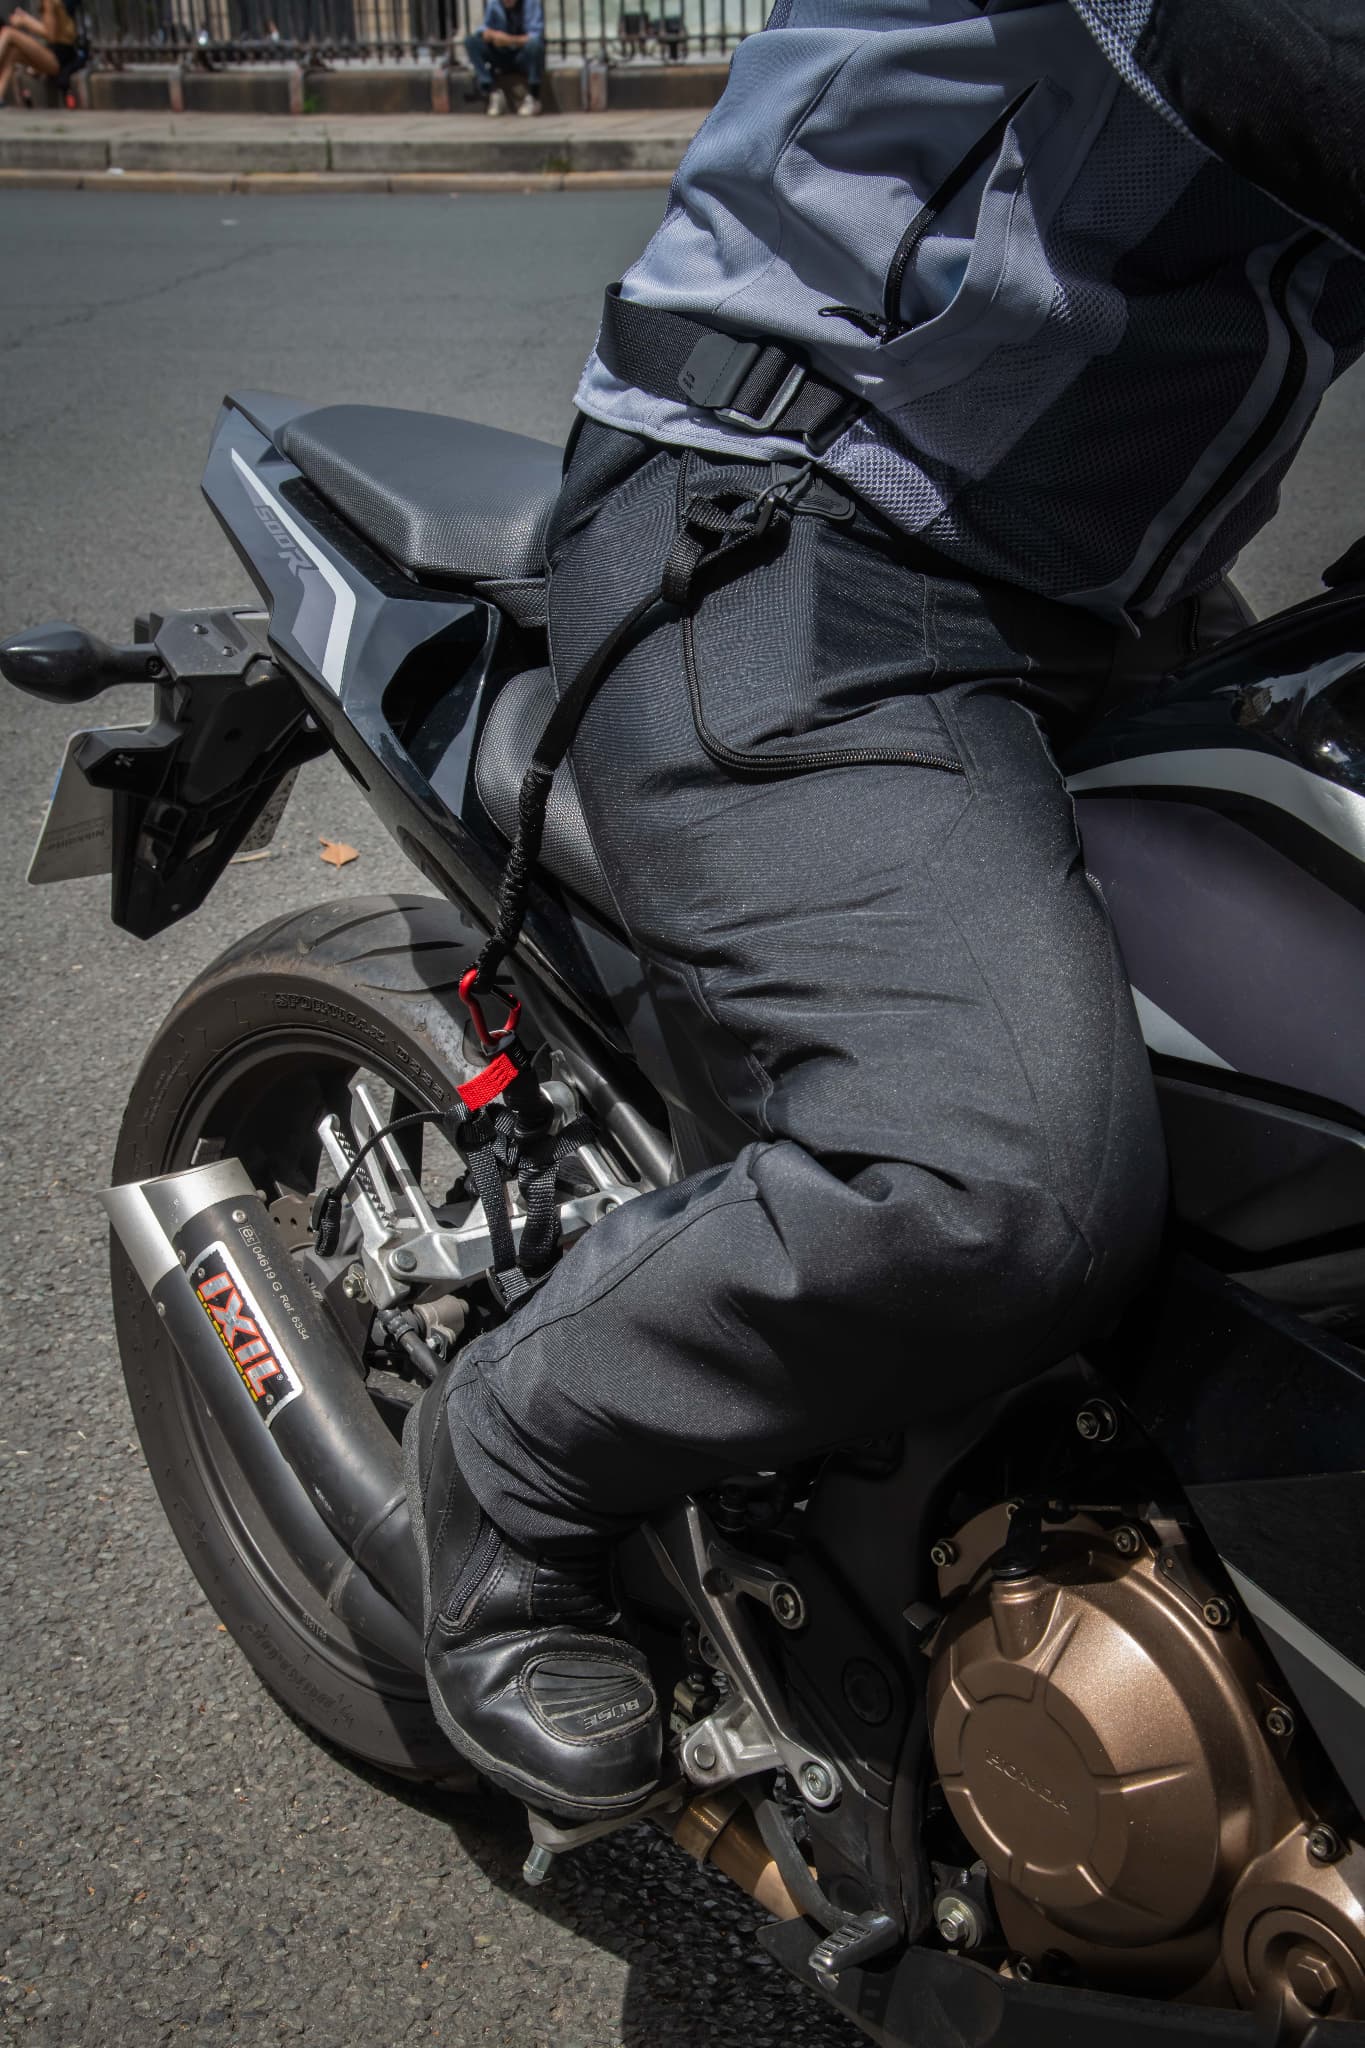 Le premier surpantalon airbag moto pourrait être Français